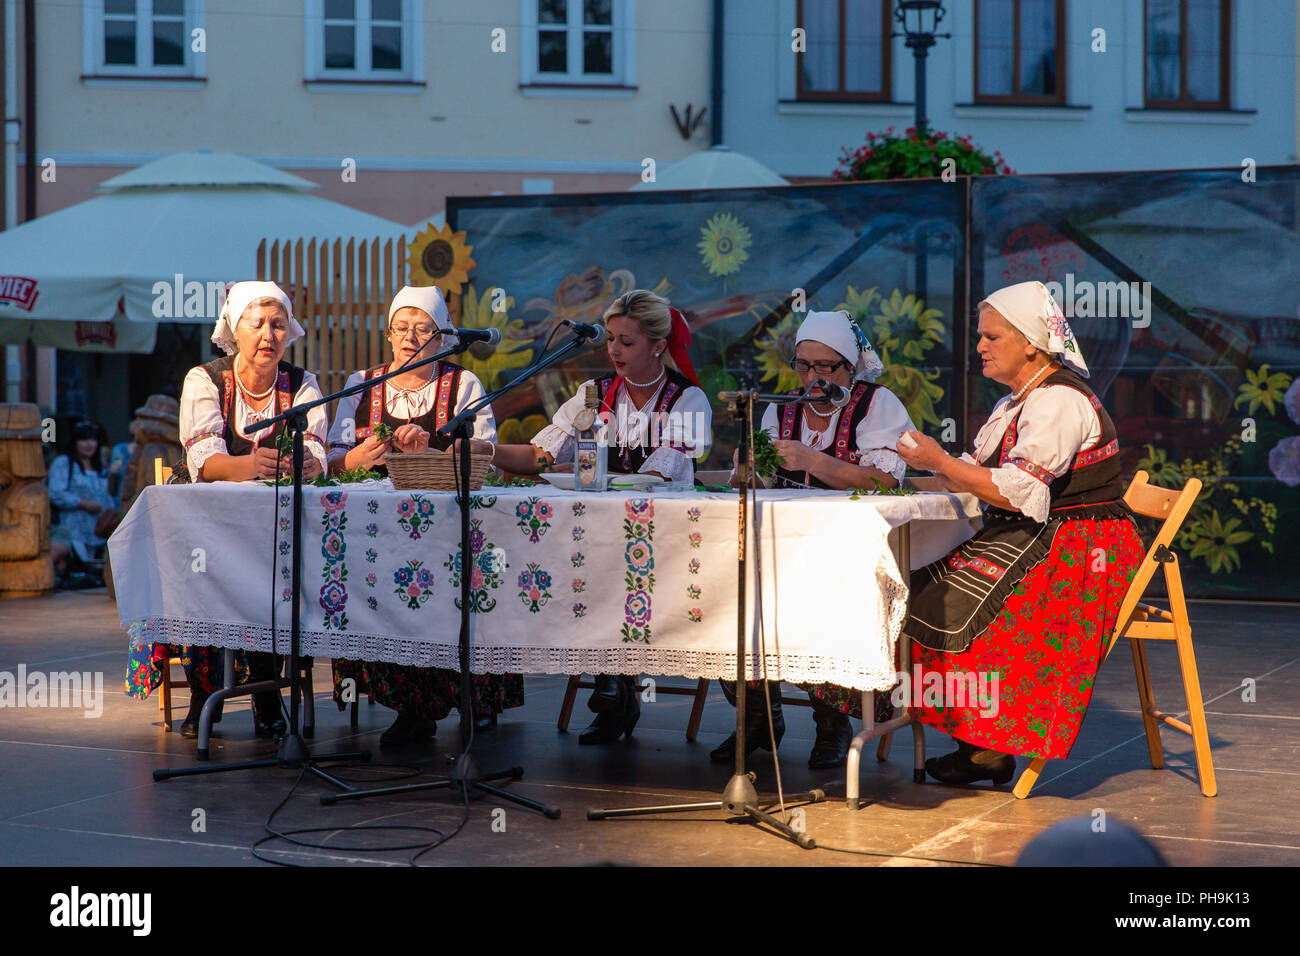 Le hongrois Magyar femmes en costumes folkloriques traditionnels de chanter sur scène lors de la manifestation culturelle internationale climats Des Carpates à Krosno, Pologne Banque D'Images